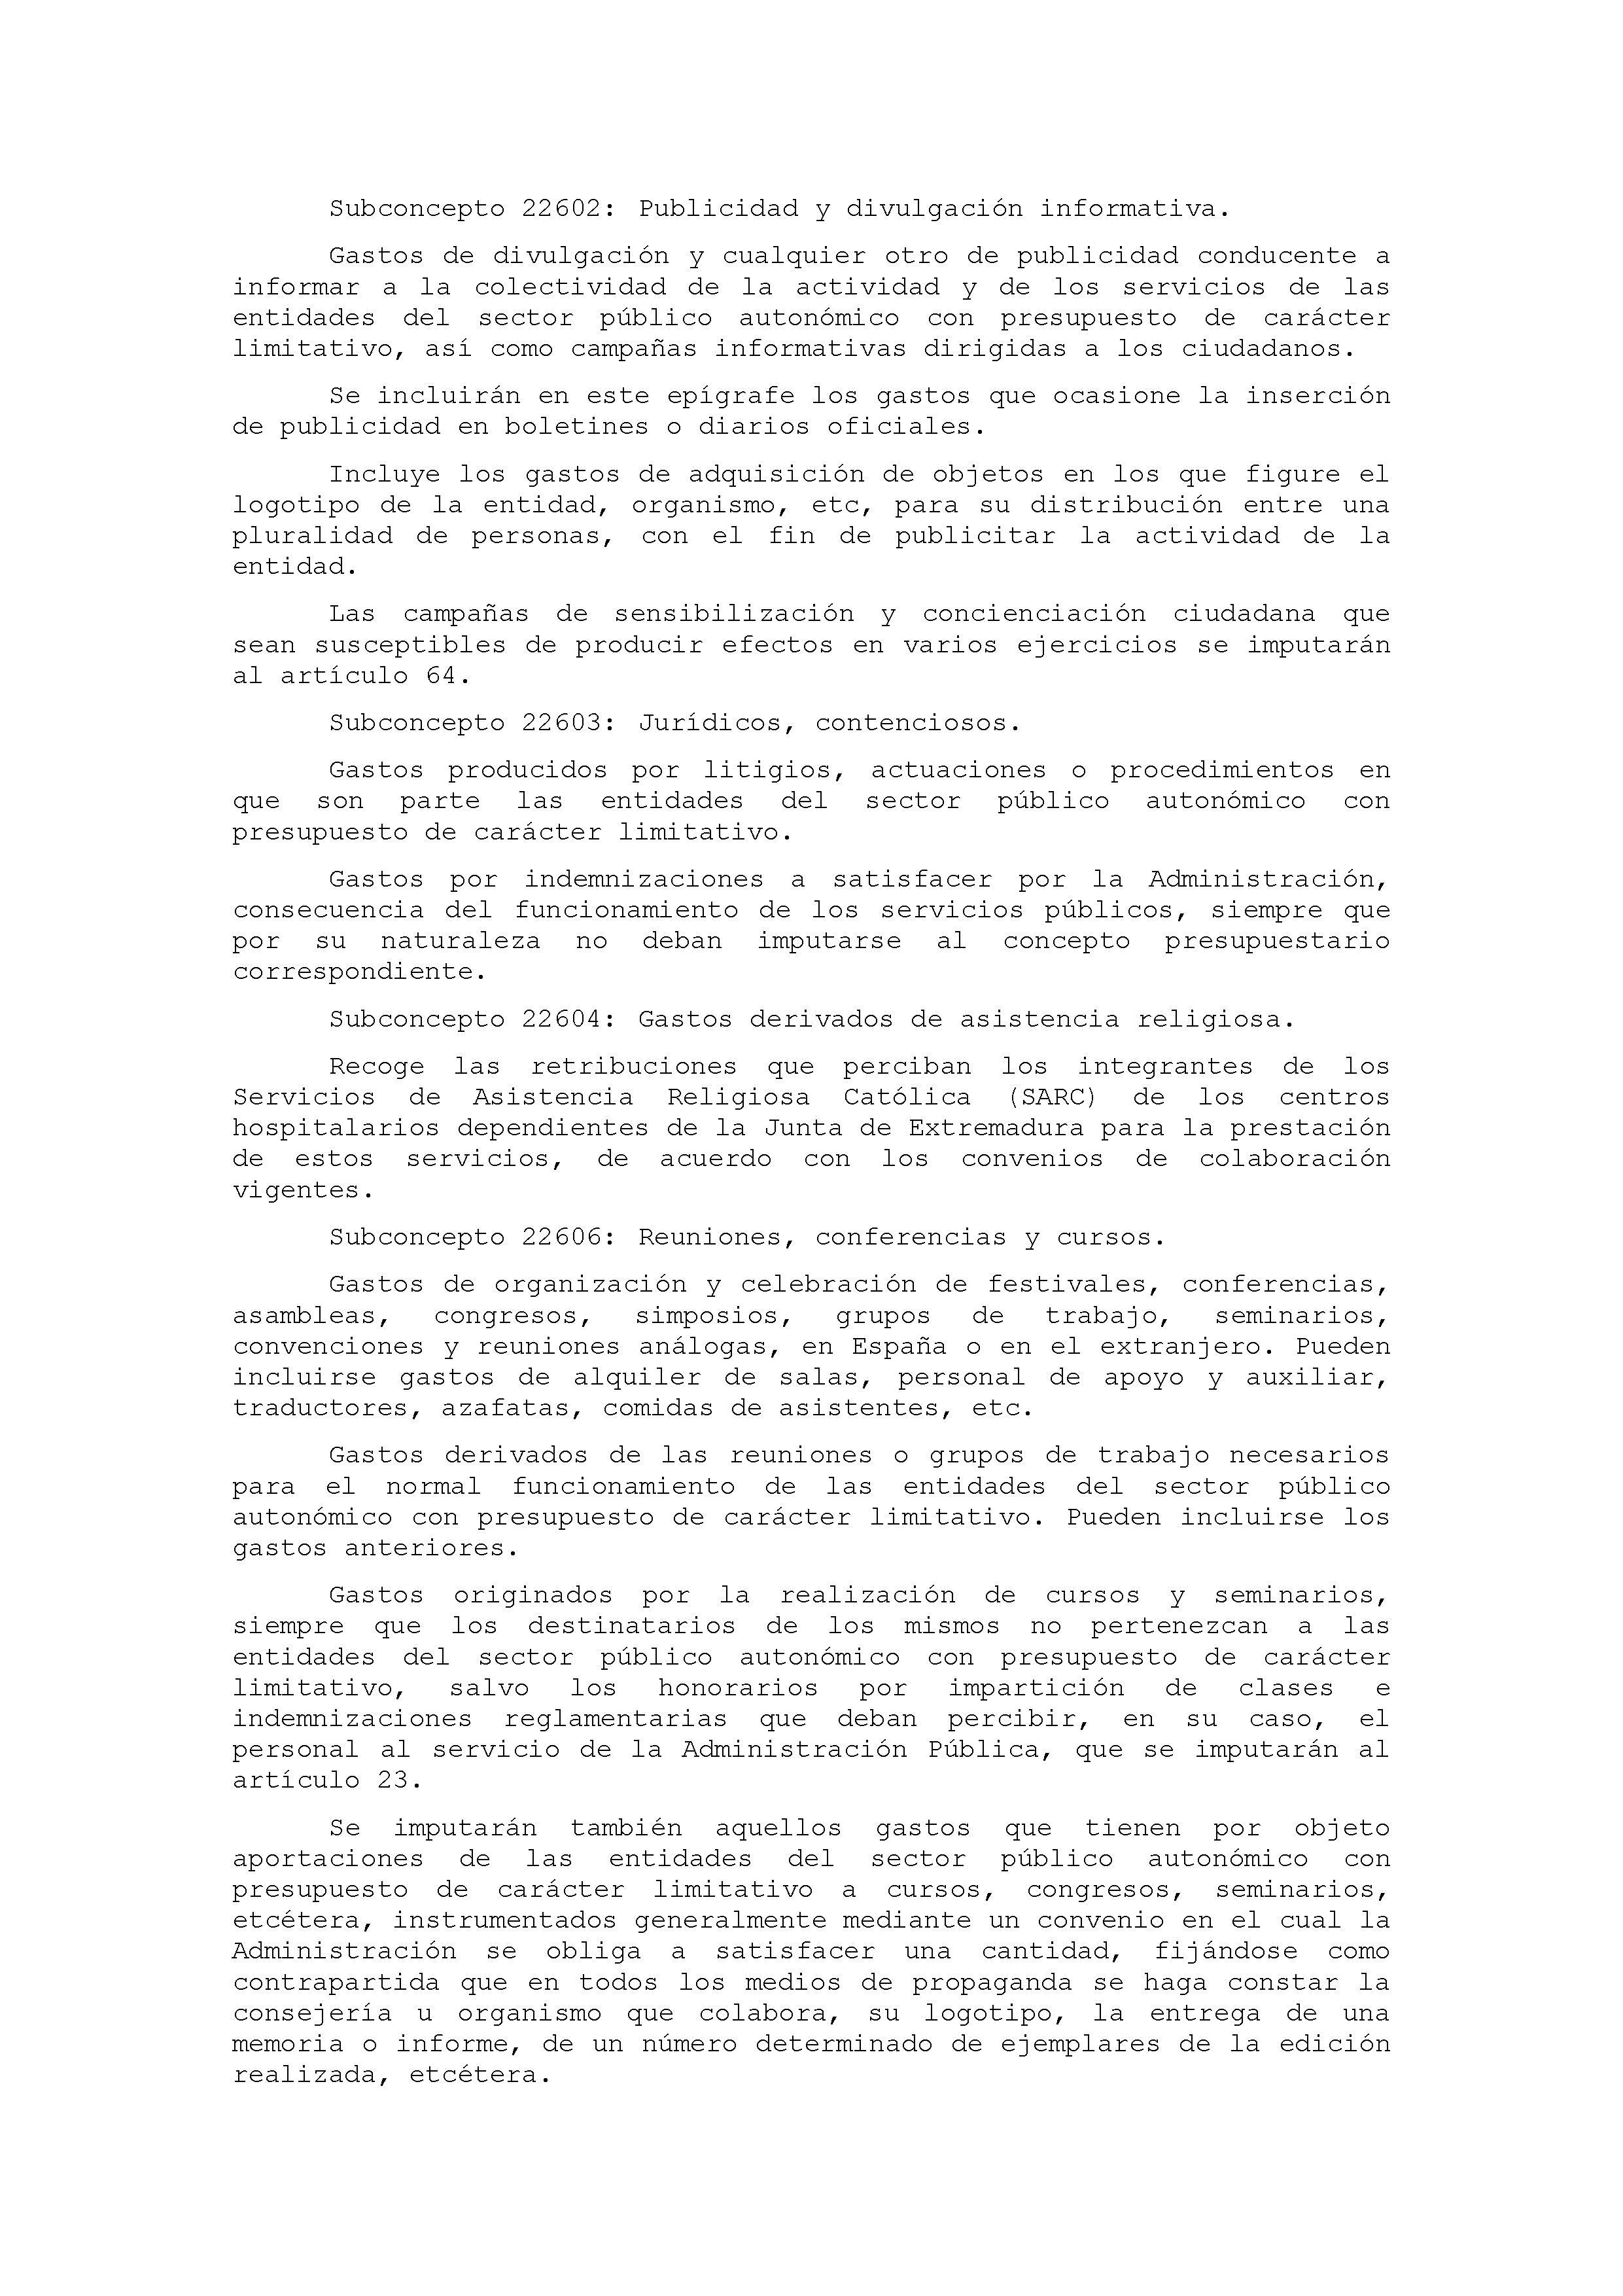 ANEXO IX CÓDIGO DE LA CLASIFICACIÓN ECONÓMICA DE LOS GASTOS PÚBLICOS Pag 21